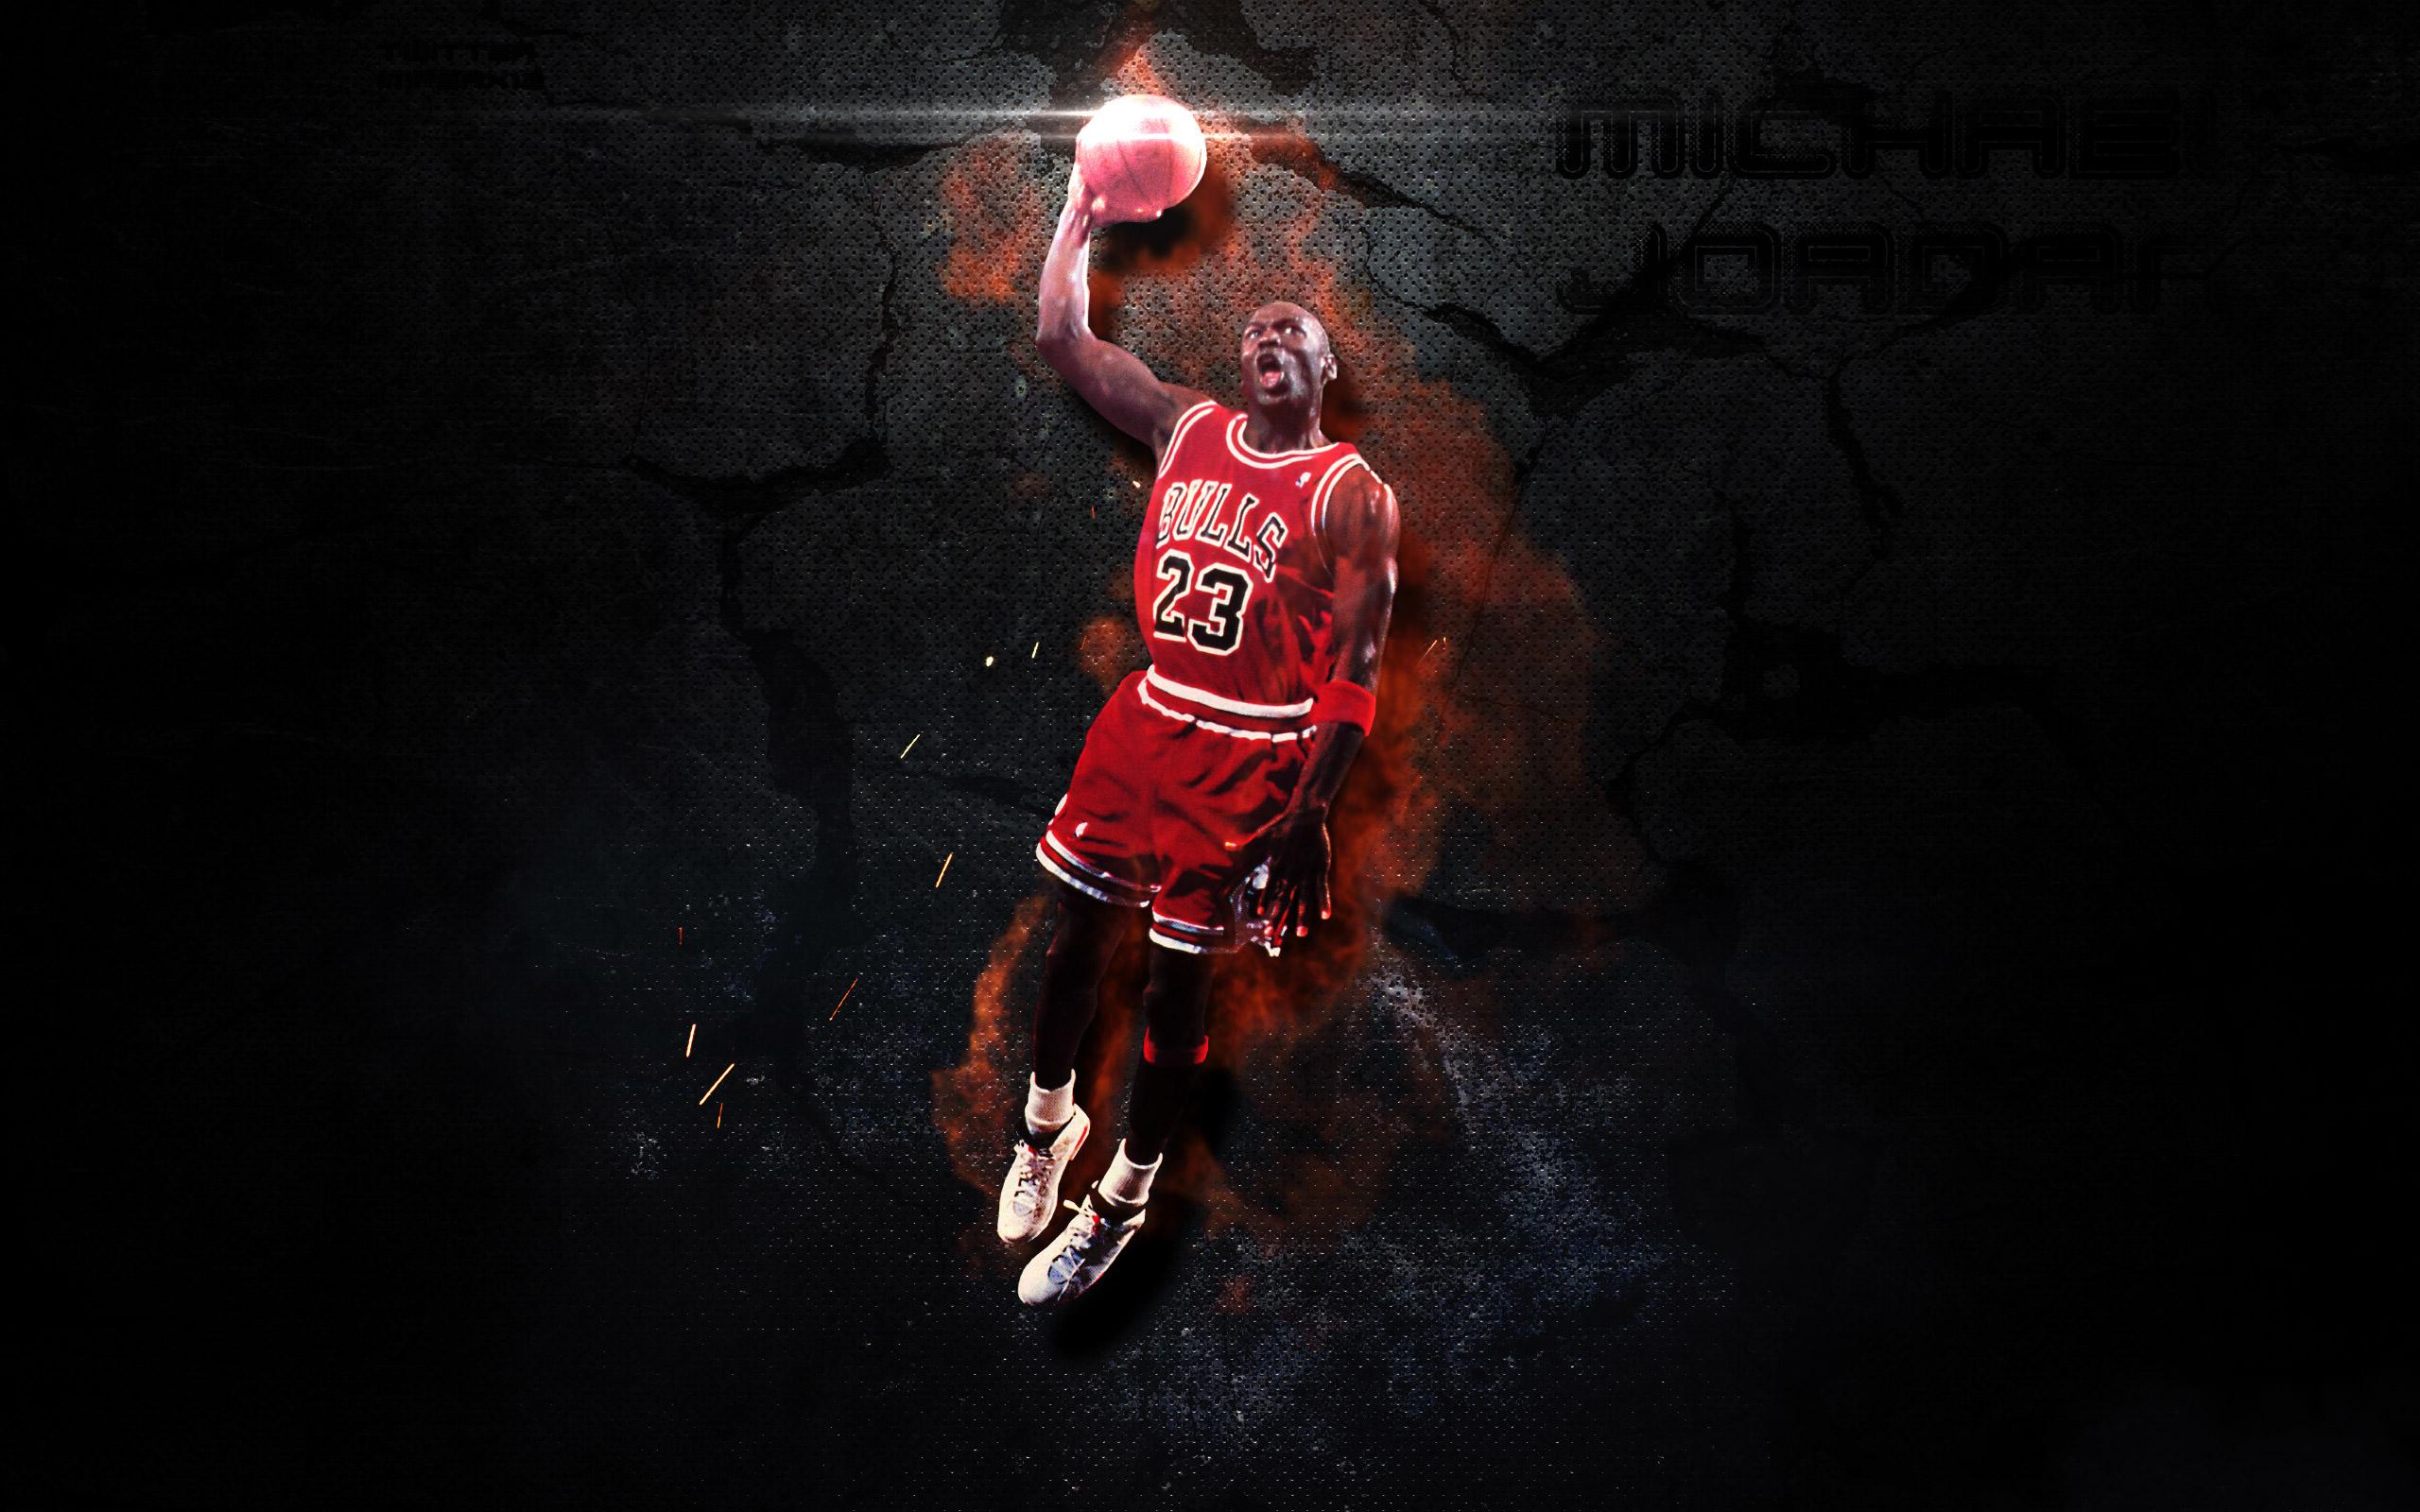 Michael Jordan Wallpaper - NawPic